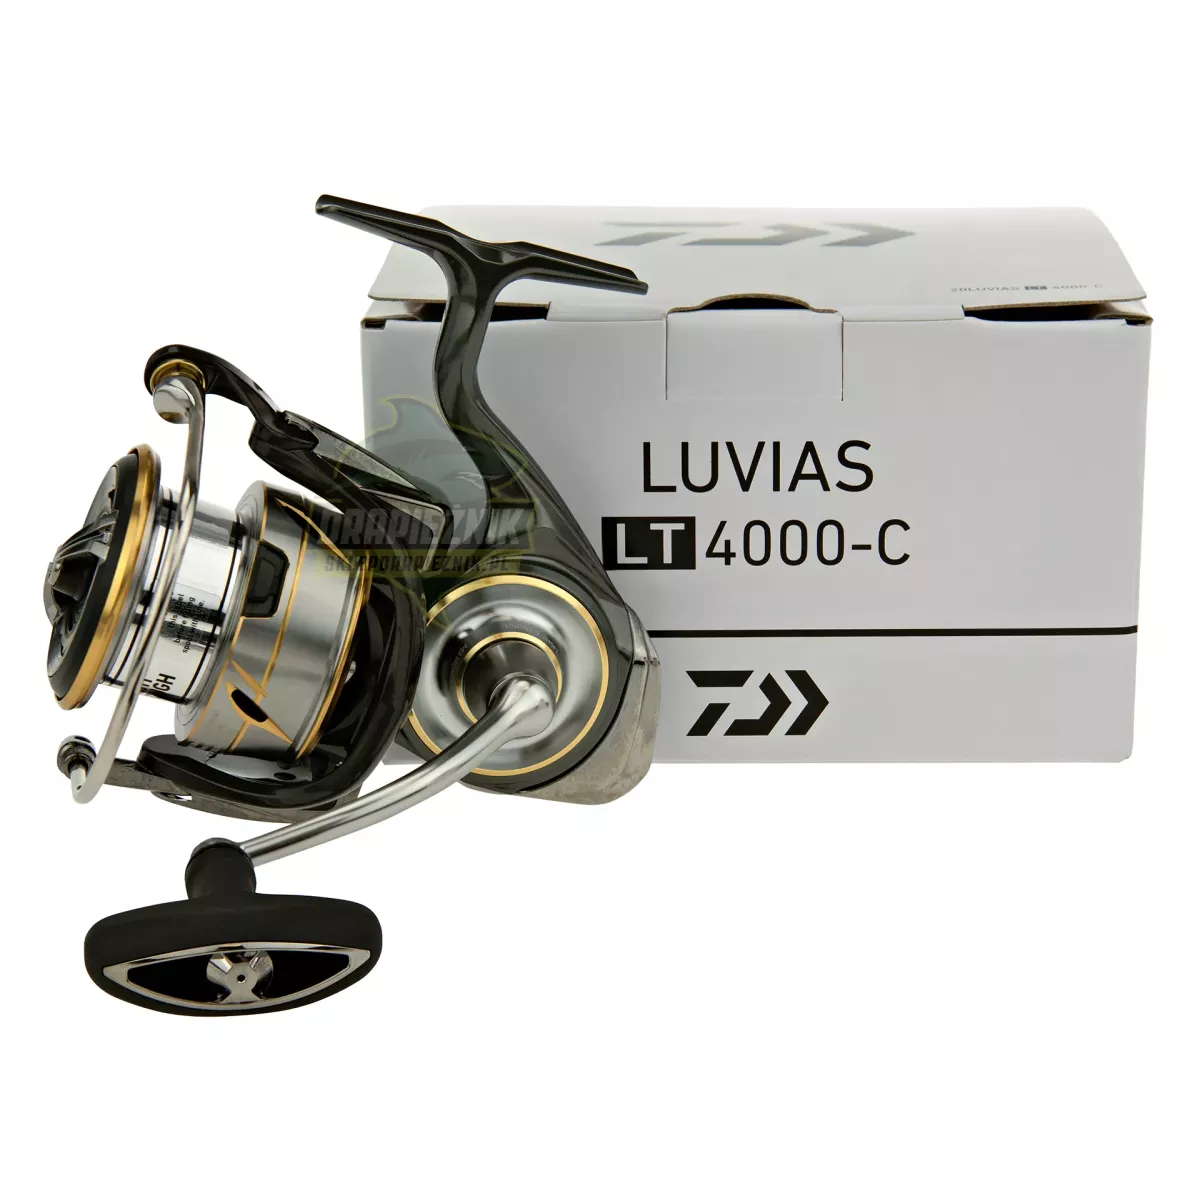 Kołowrotek Daiwa 20 Luvias LT 4000-C